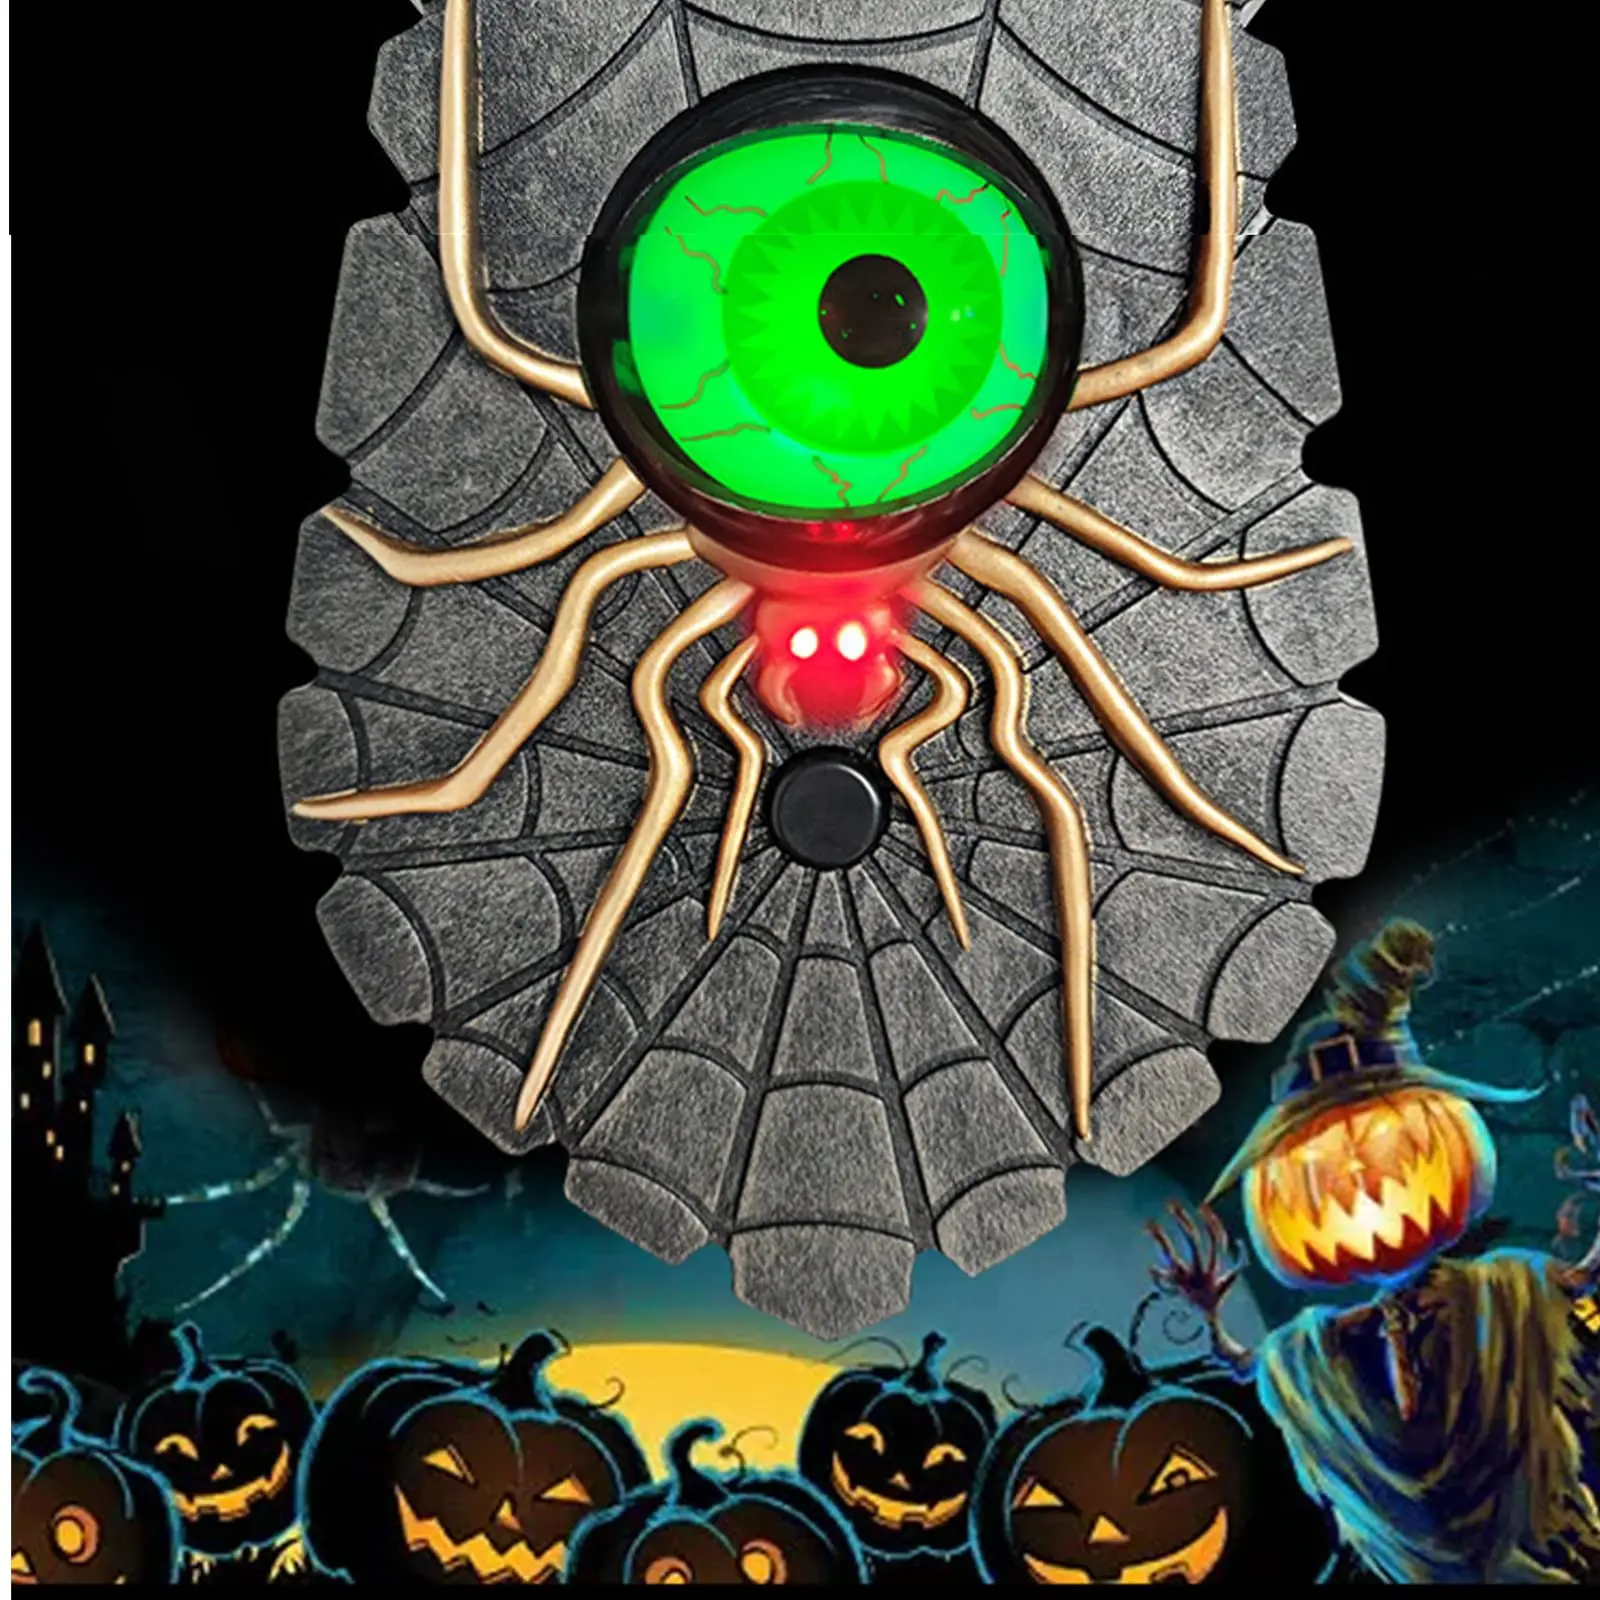 

Декорации для дверного звонка на Хэллоуин, с рисунком паука, анимированный глазный звонок, дверной звонок со спутанными звуками светильник, дом с привидениями, реквизит вечерние НКИ